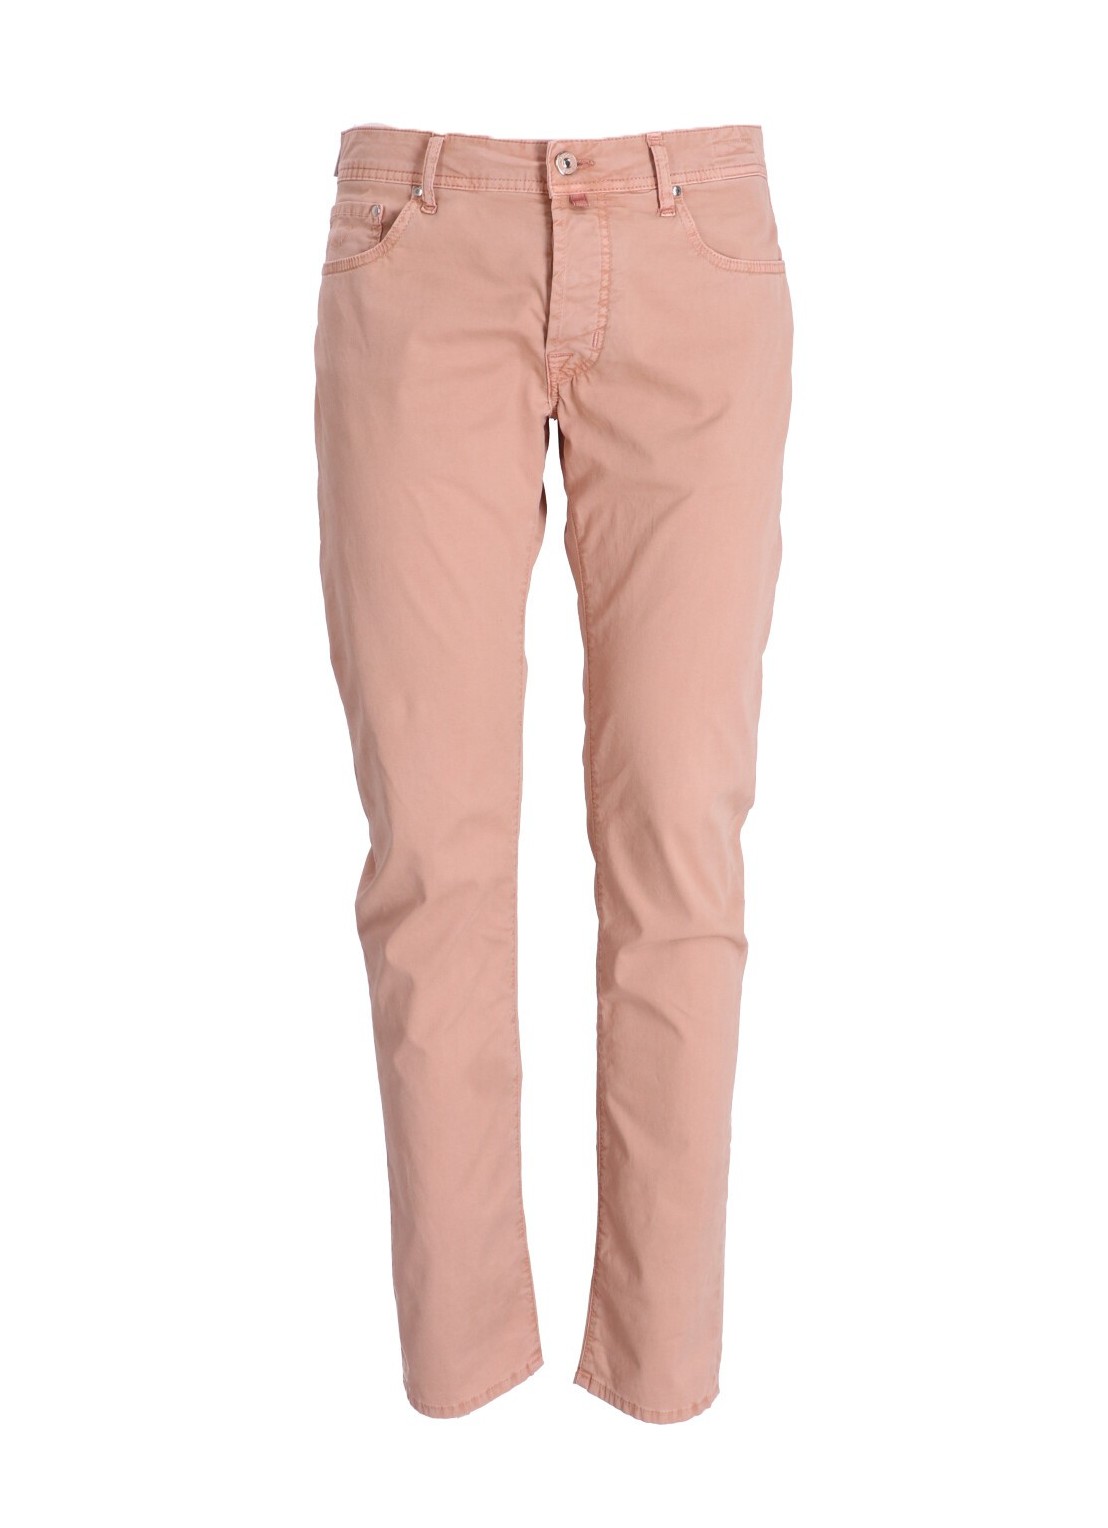 Pantalon jeans jacob cohen denim man 5 pocket uqe0436s2544 m20 talla rosa
 